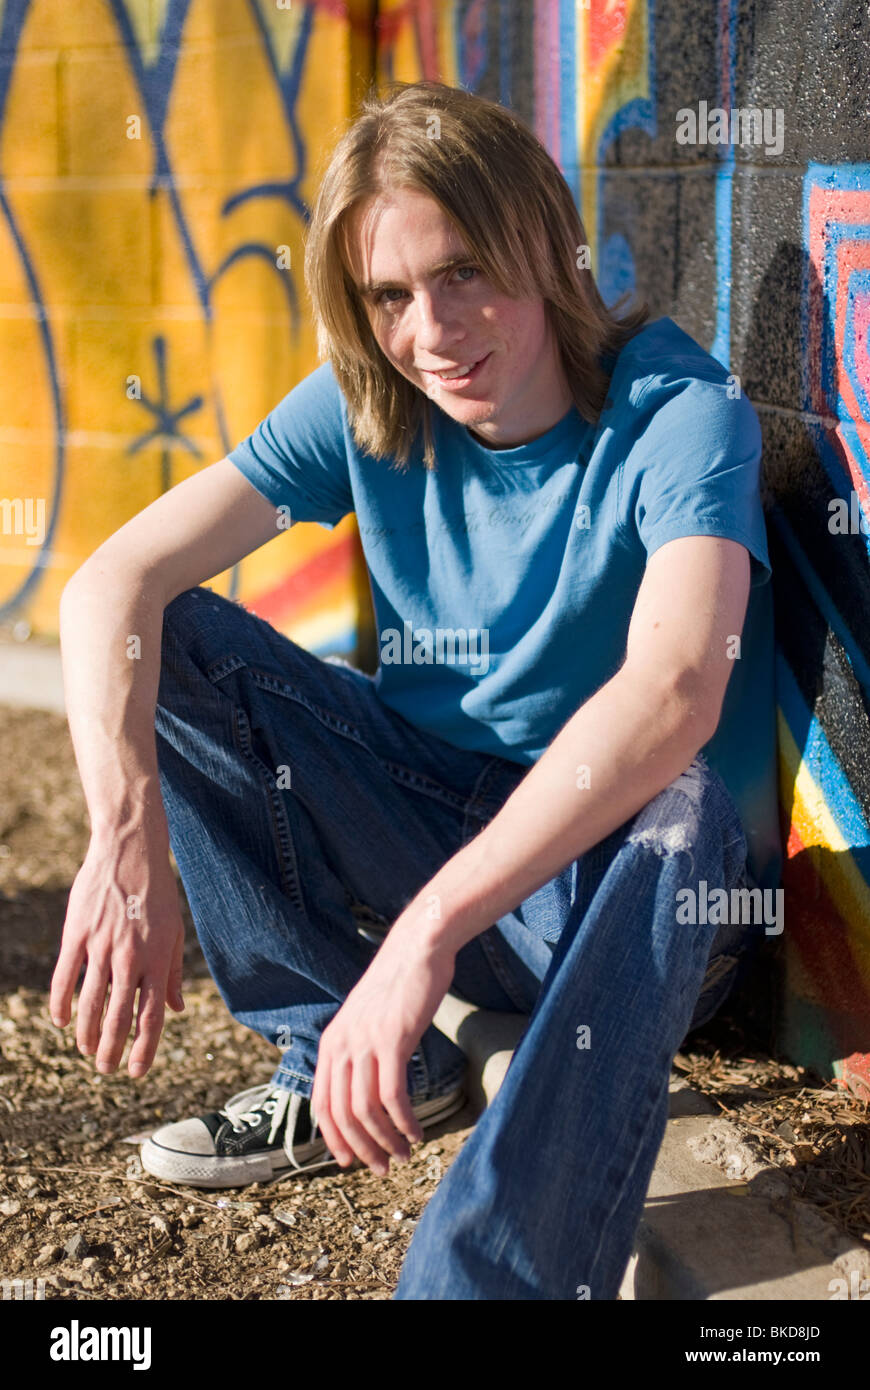 18-20 años de edad, hombre en zapatillas, pantalones vaqueros y una camiseta de cuclillas cerca de una pared cubierta de graffiti - sonriendo (vertical) Foto de stock